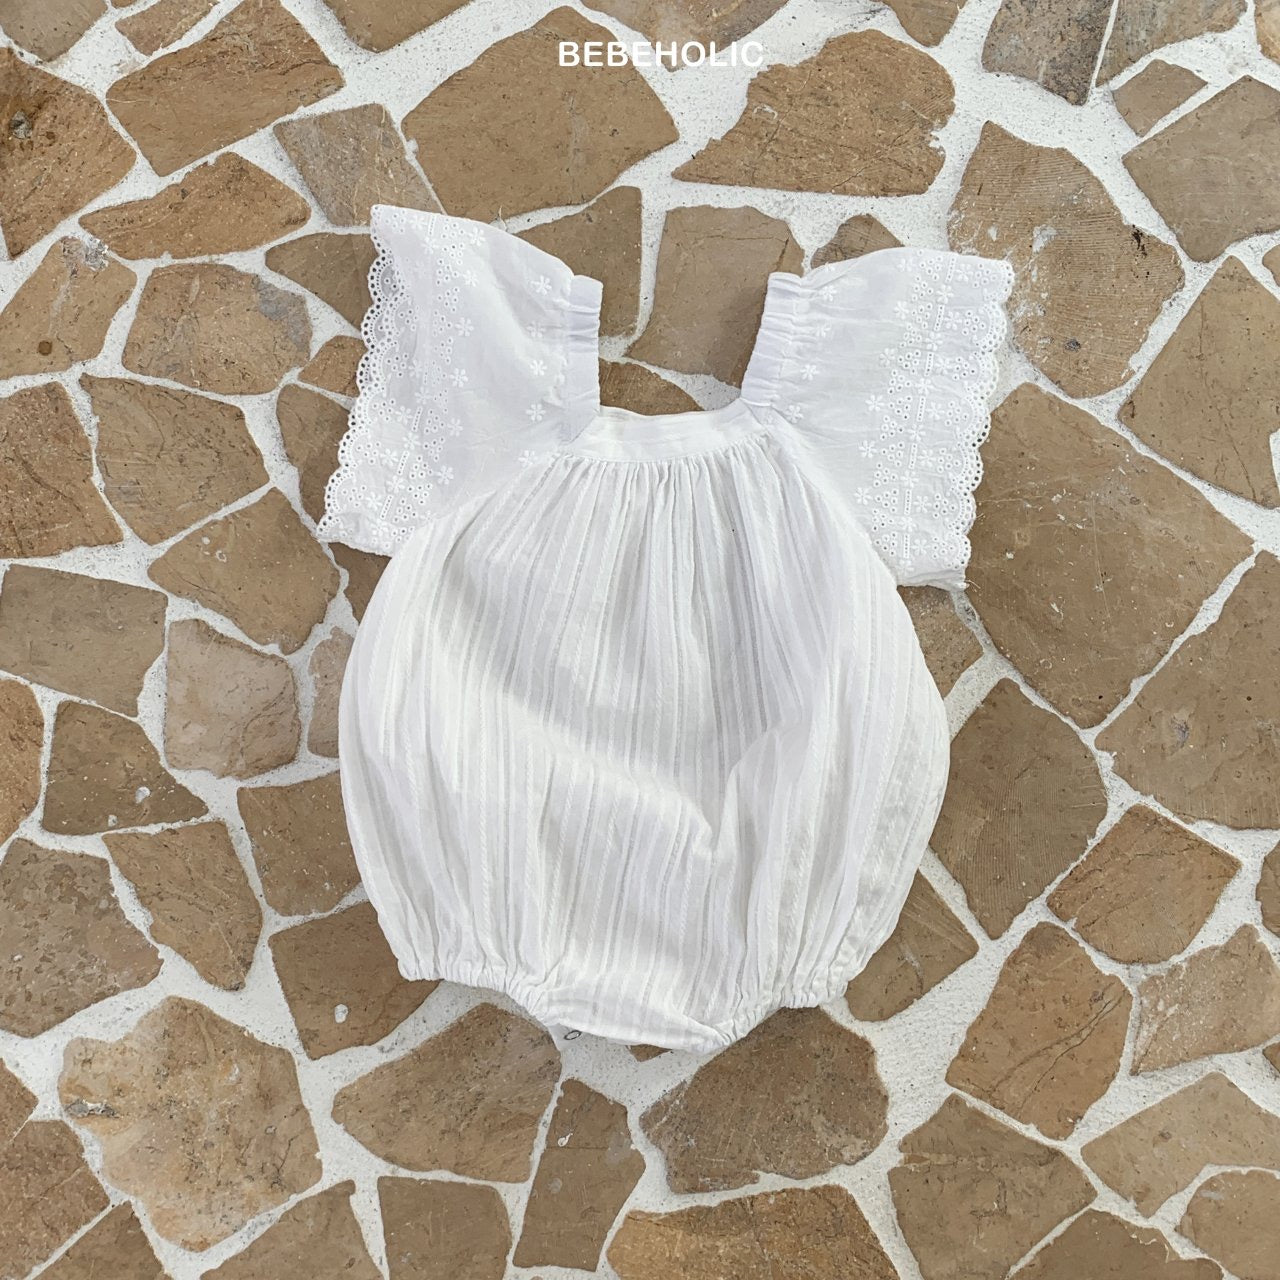 Ein weißer Wing Body Suit von Bebe Holic mit Spitzenschulterdetails liegt flach auf einem Mosaiksteinpflaster. Der Stoff wirkt leicht und eignet sich für ein Sommeroutfit.